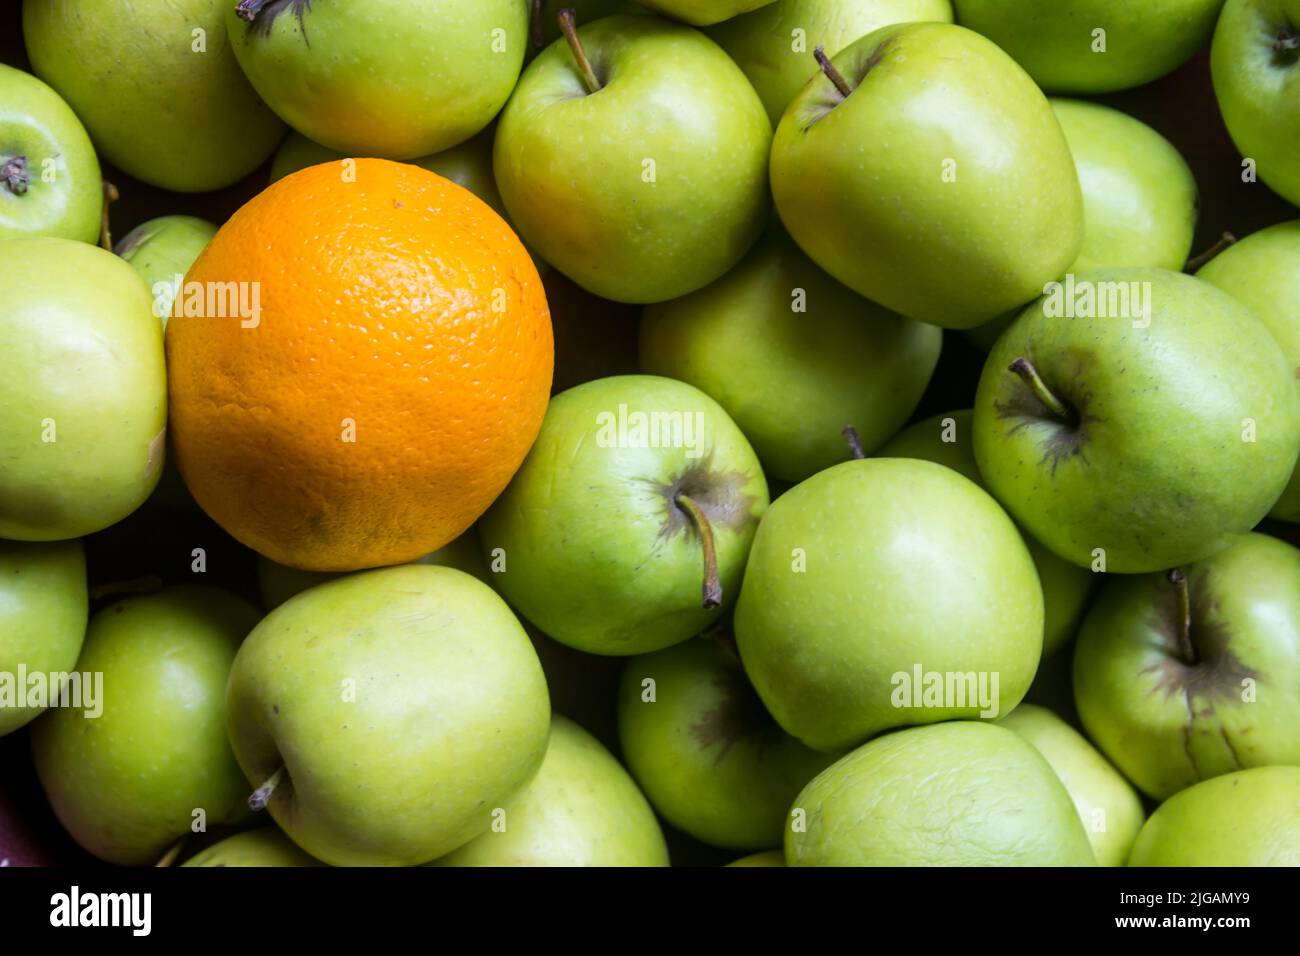 Una masa de manzanas verdes brillantes, con una sola naranja Foto de stock